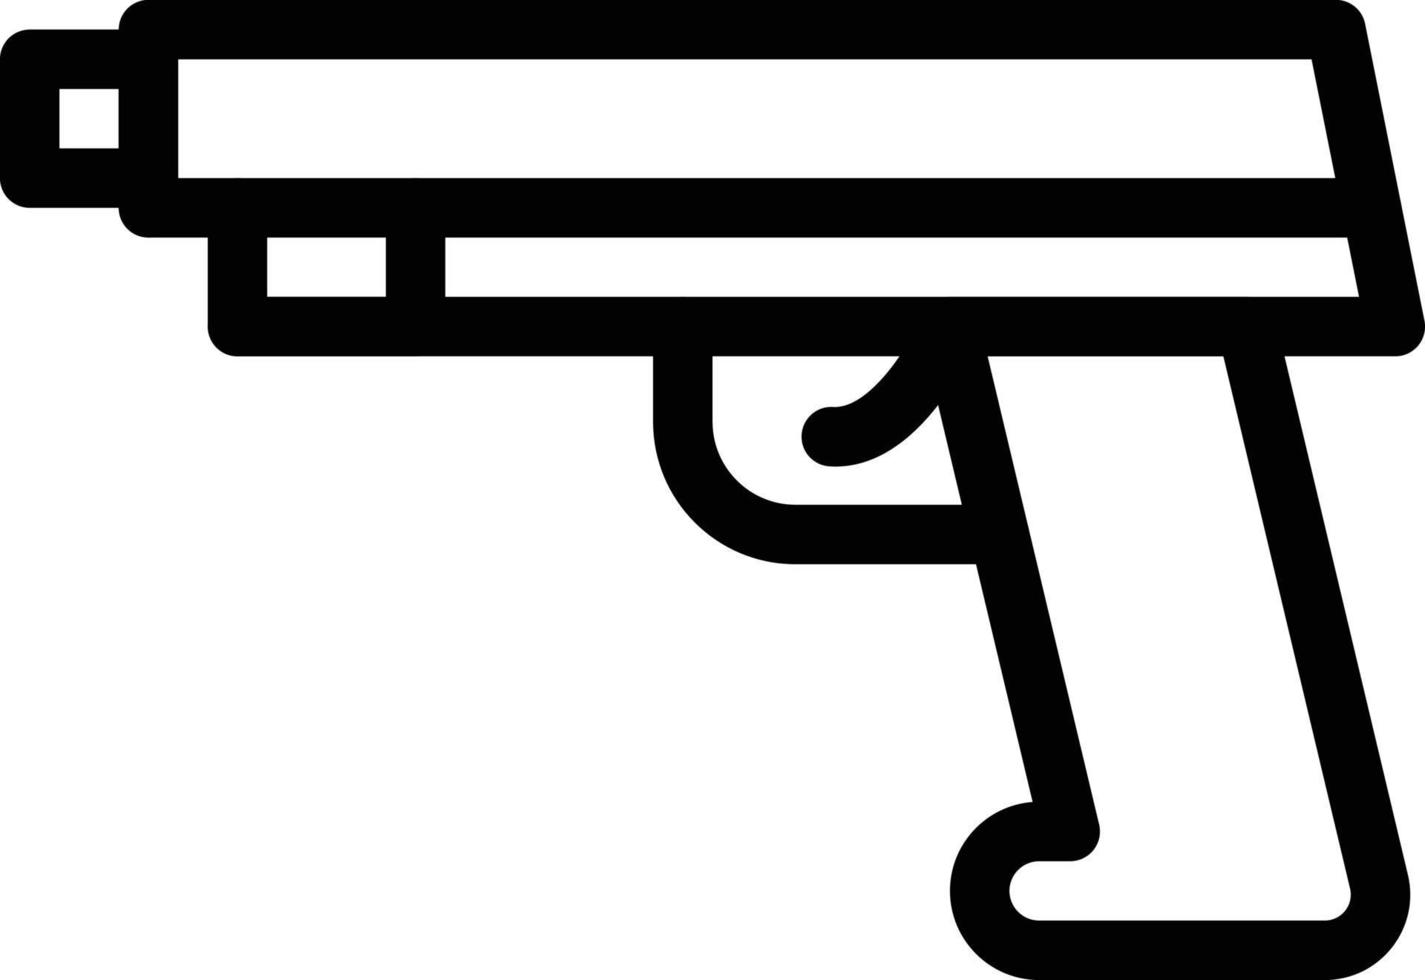 pistol vektor illustration på en bakgrund. premium kvalitet symbols.vector ikoner för koncept och grafisk design.